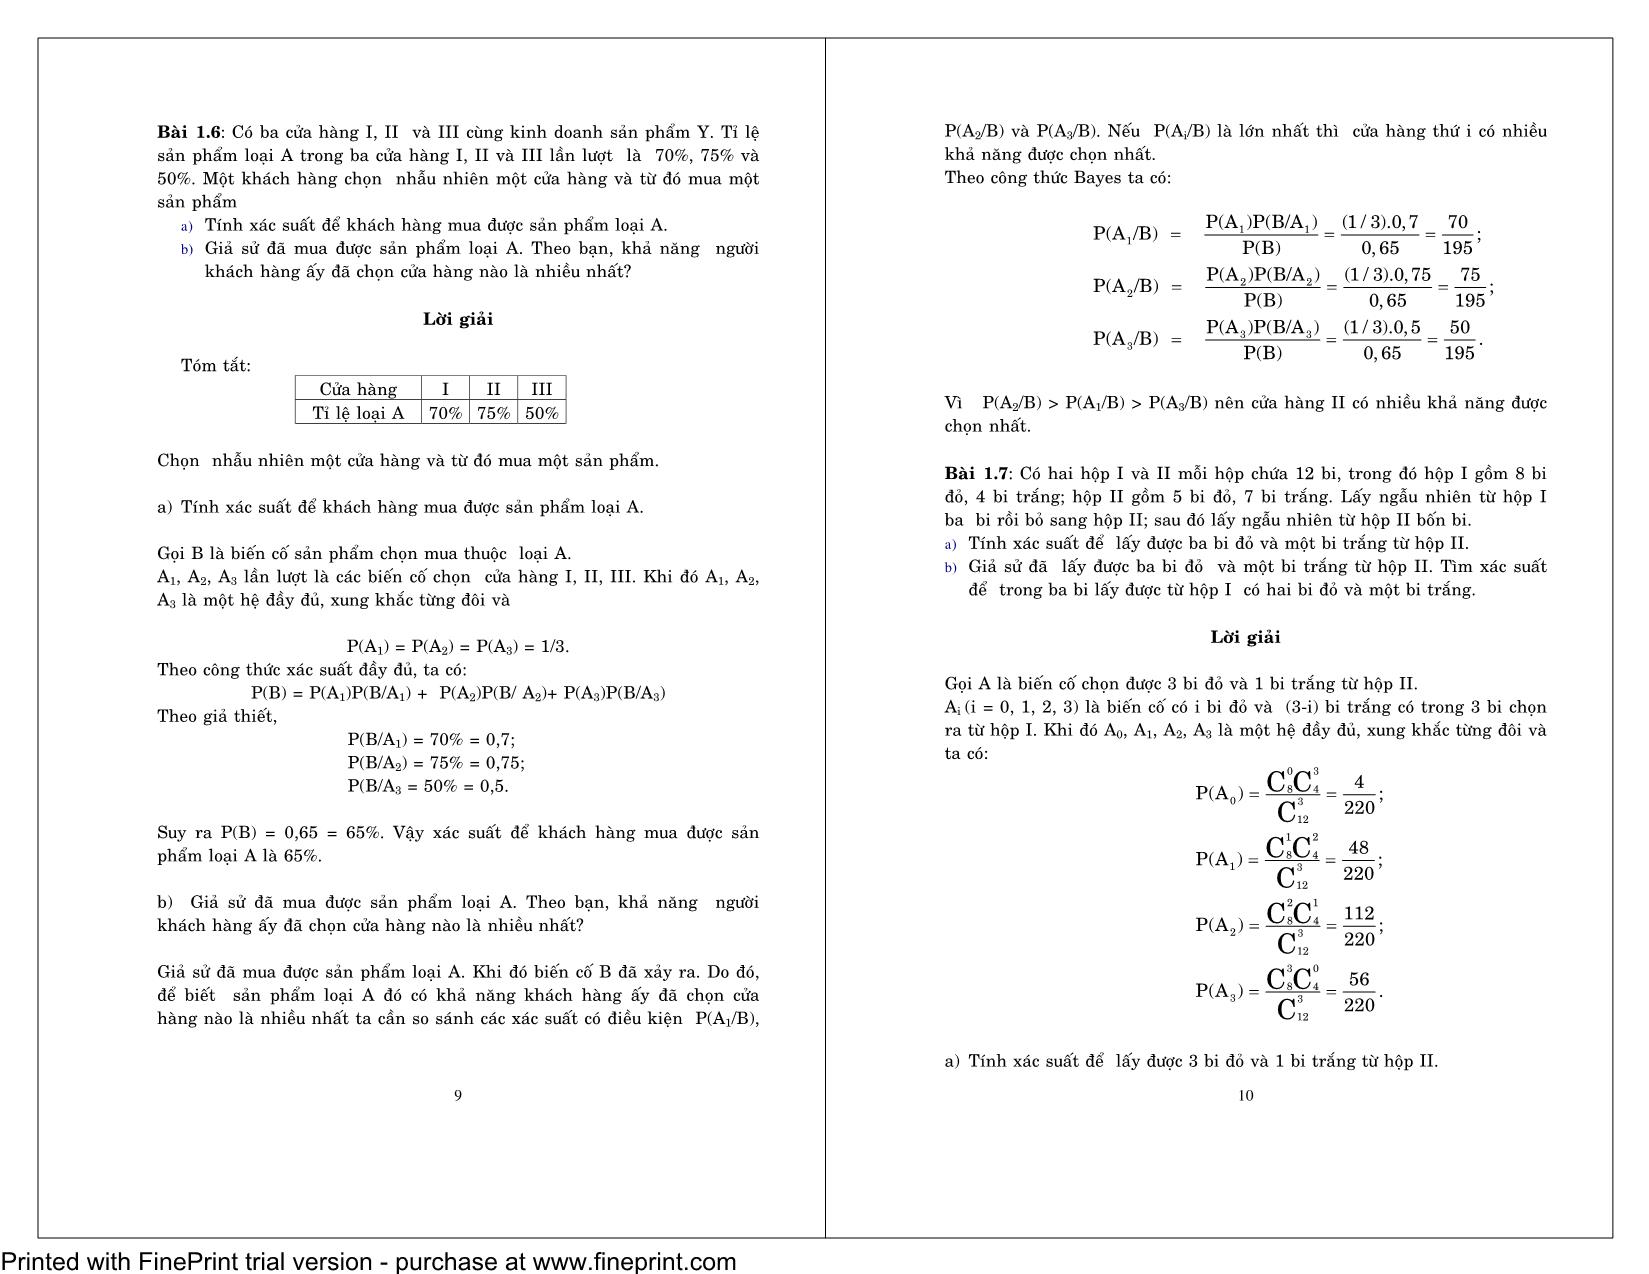 Bài giải xác suất thống kê trang 5